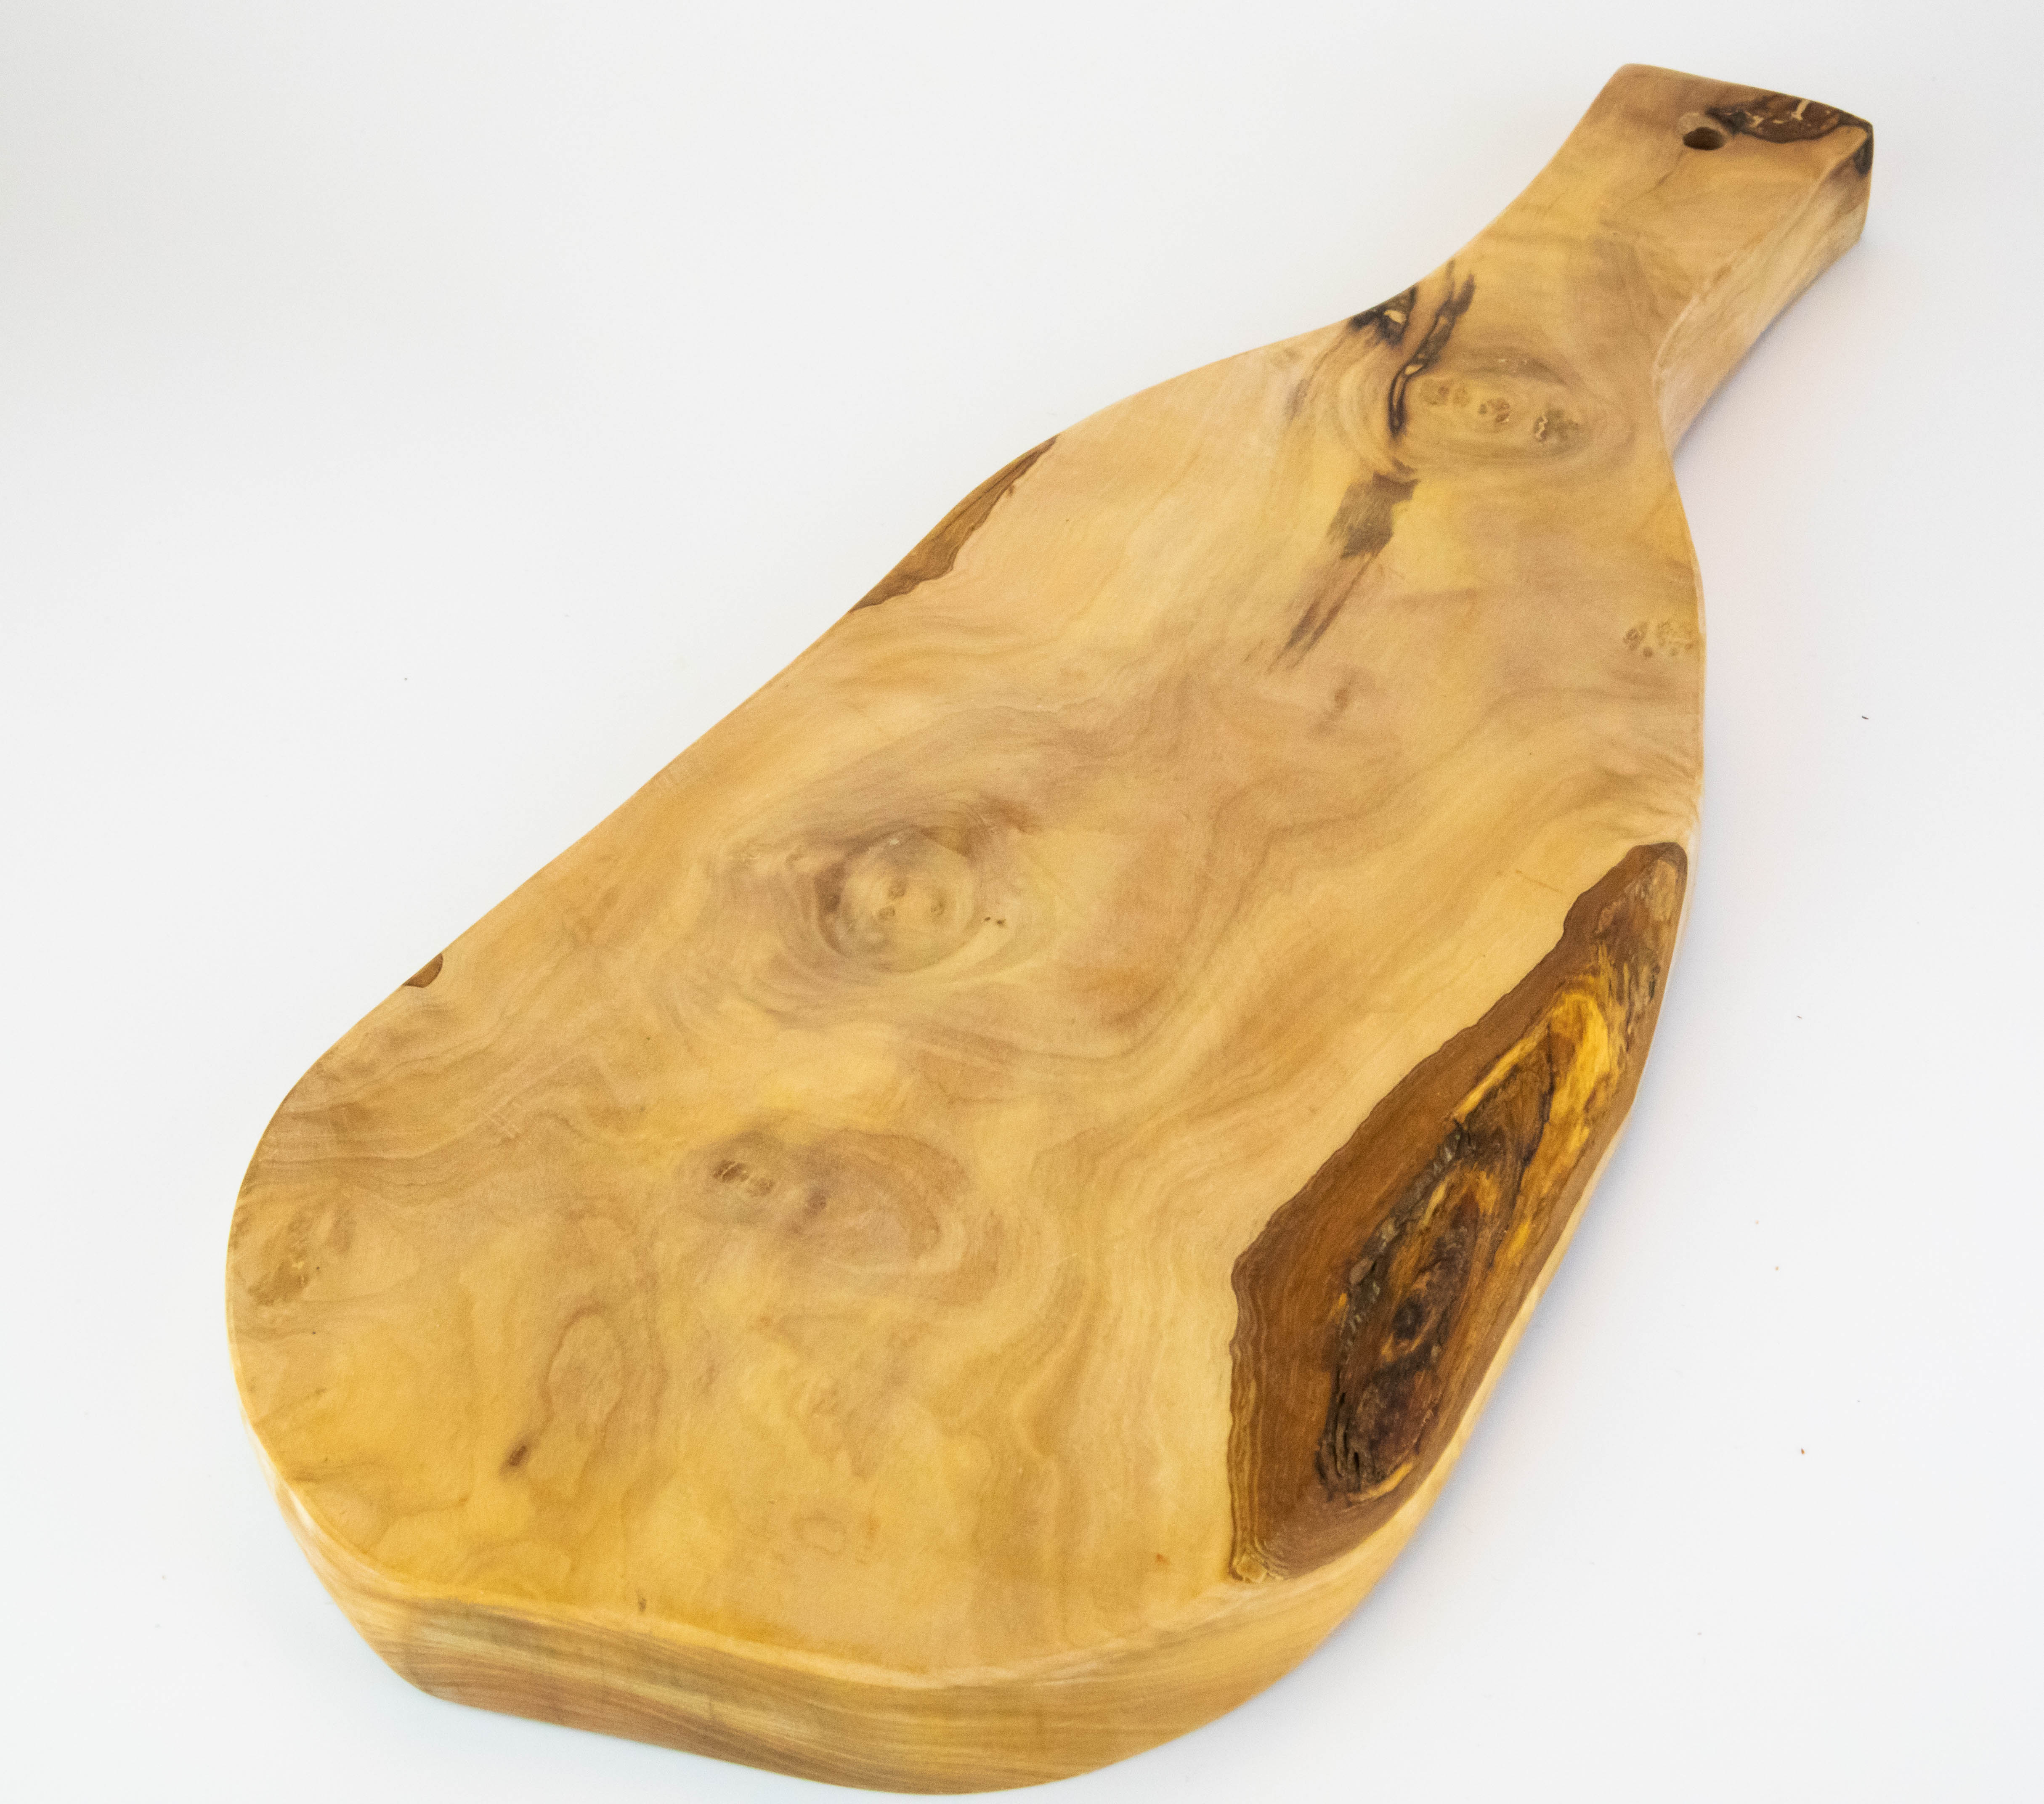 Tabla de servicio rústica con mango de madera de olivo de 50-55 cm.